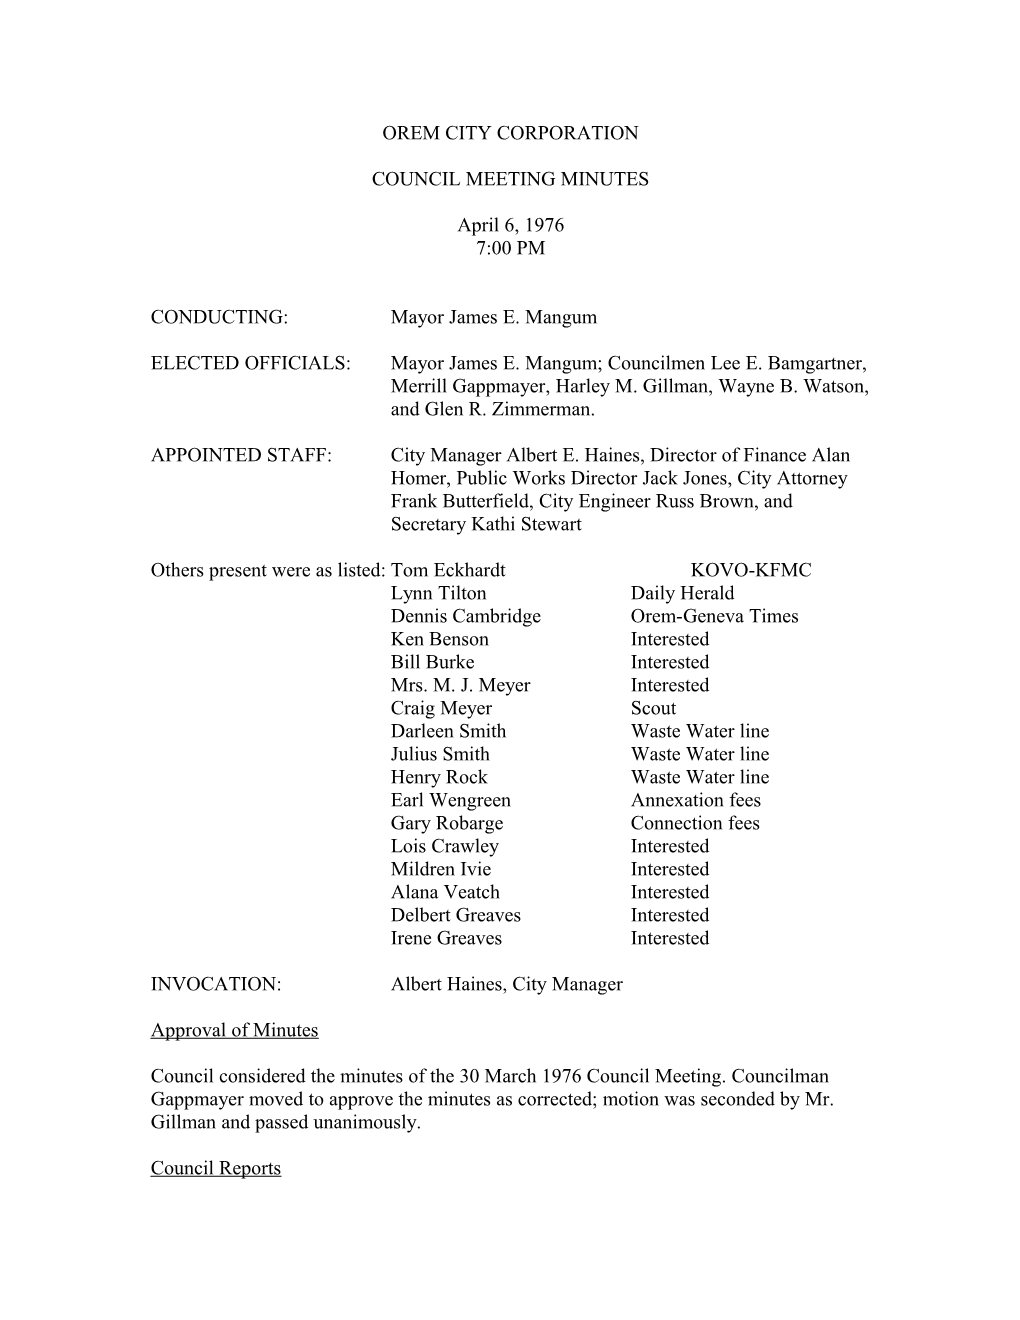 Orem City Corporation Council Meeting Minutes